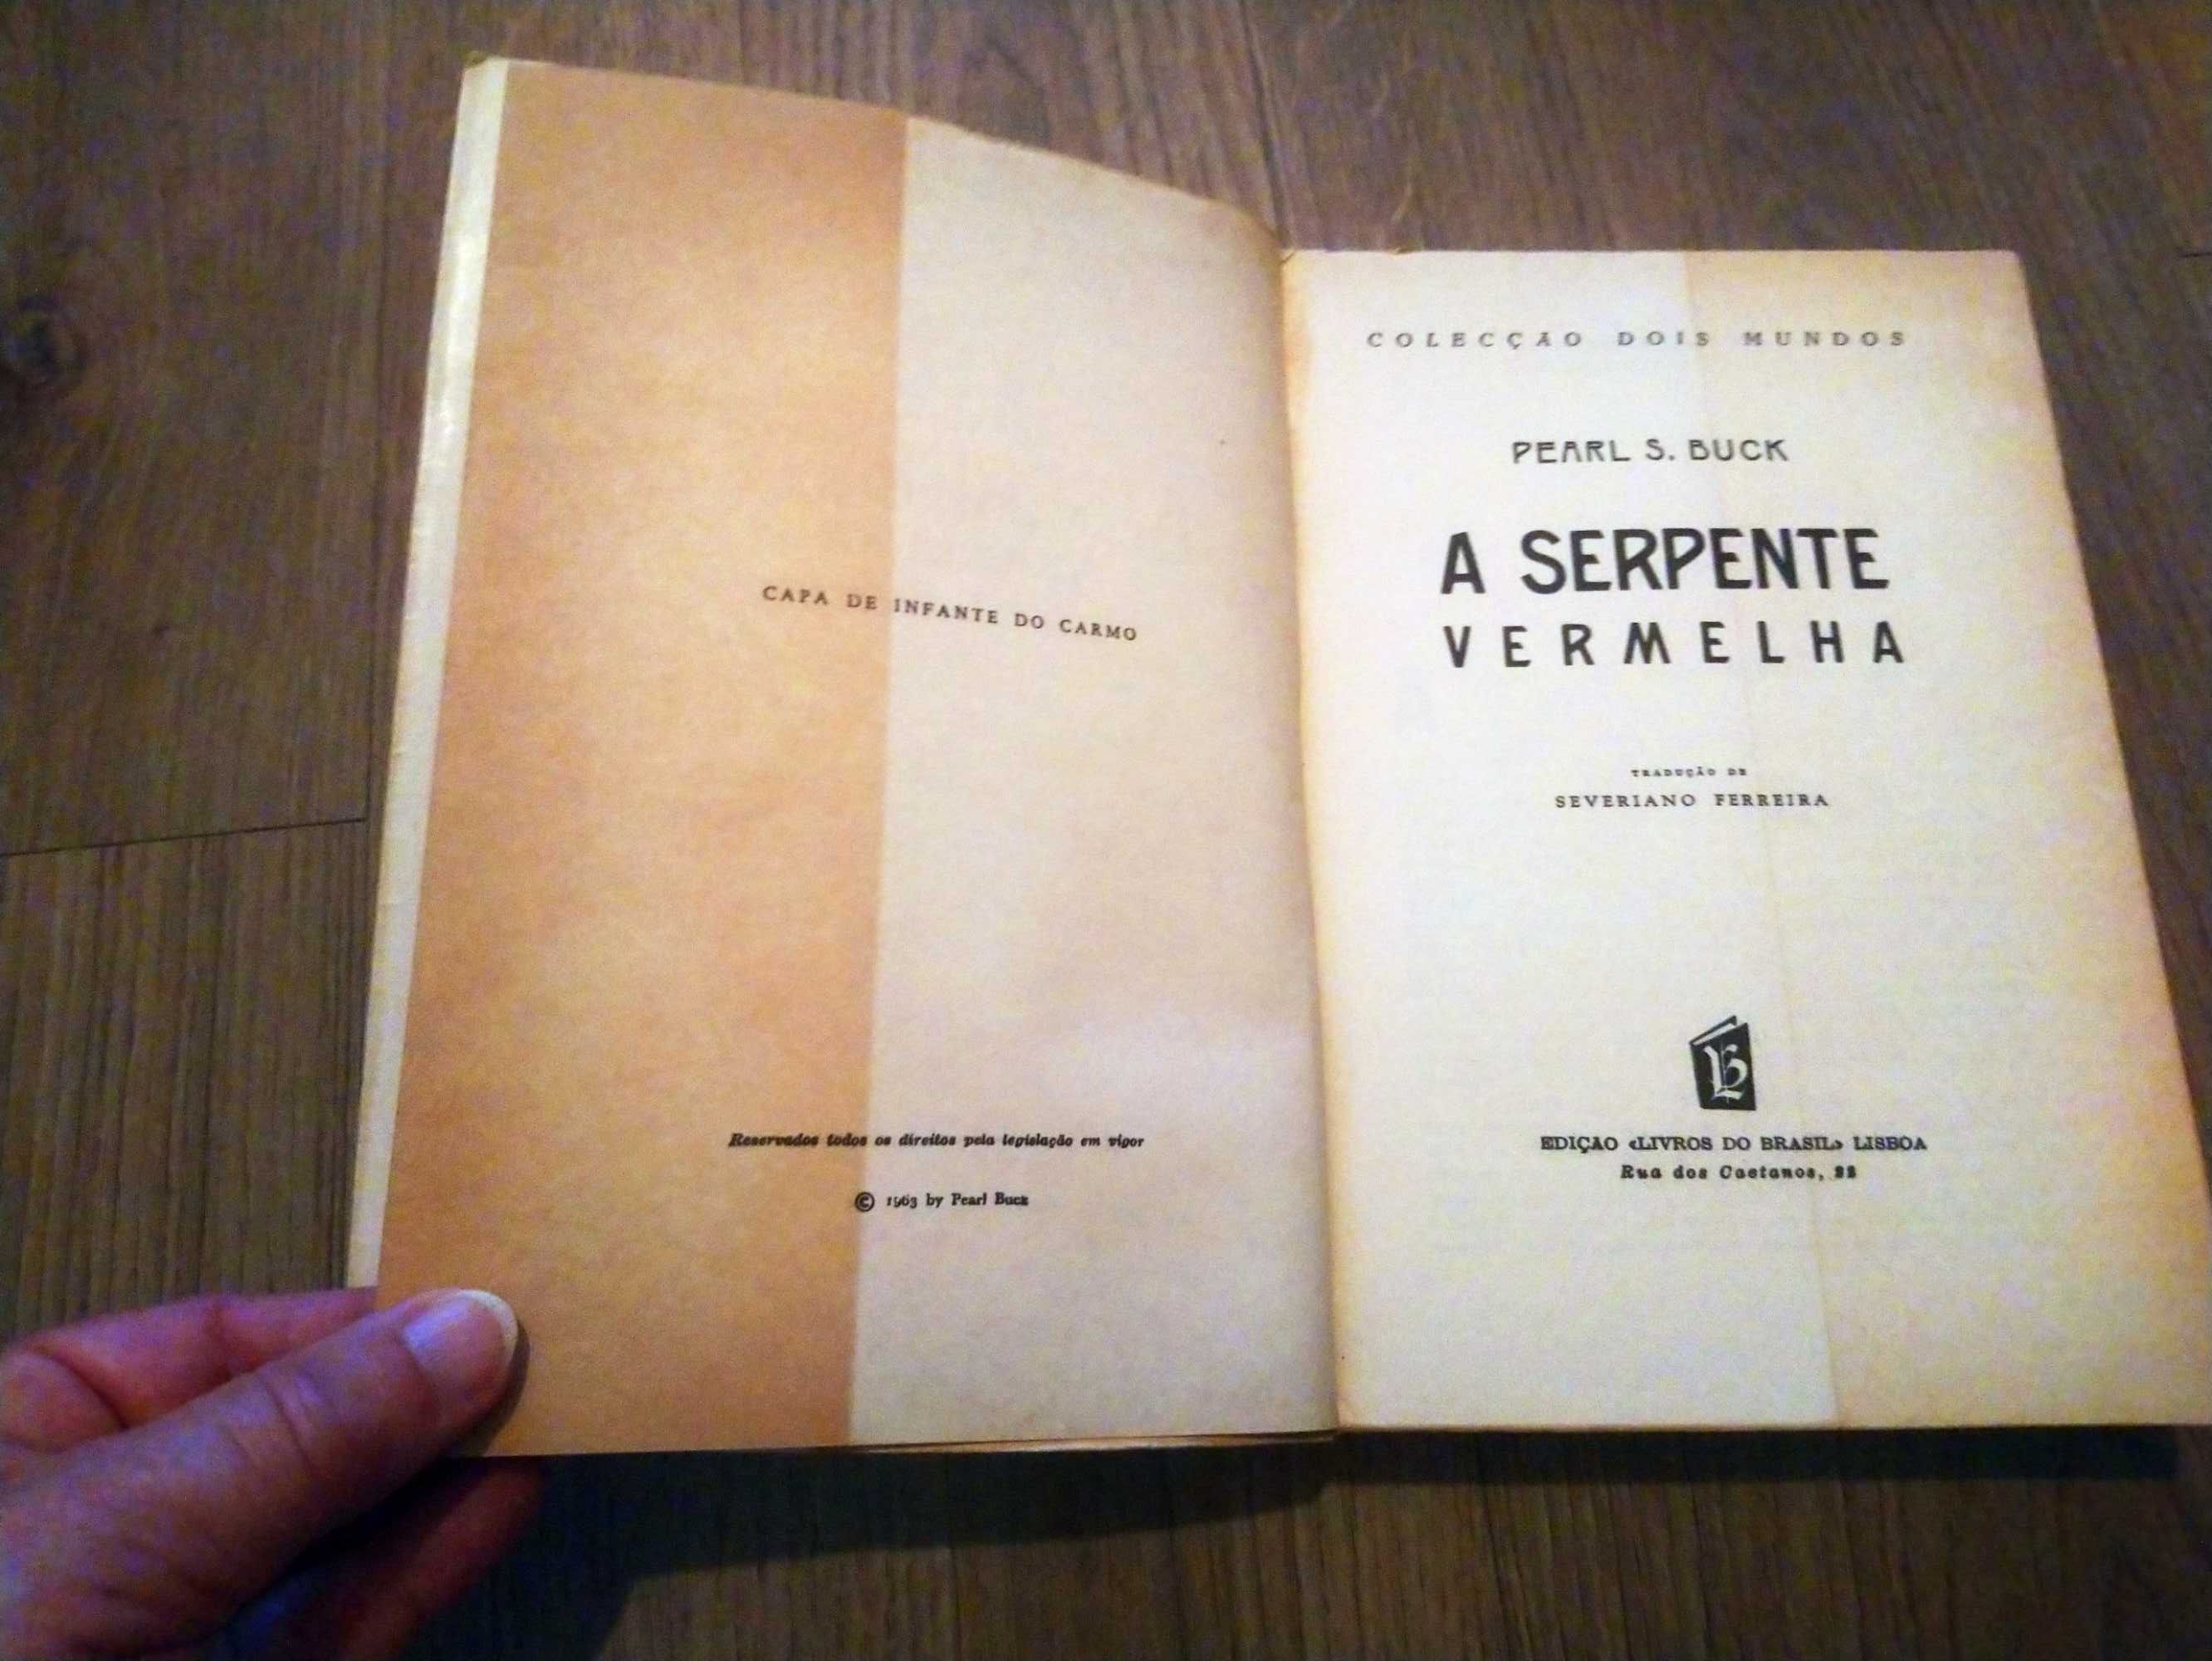 Livro “A Serpente Vermelha” de Pearl S. Buck e Outros